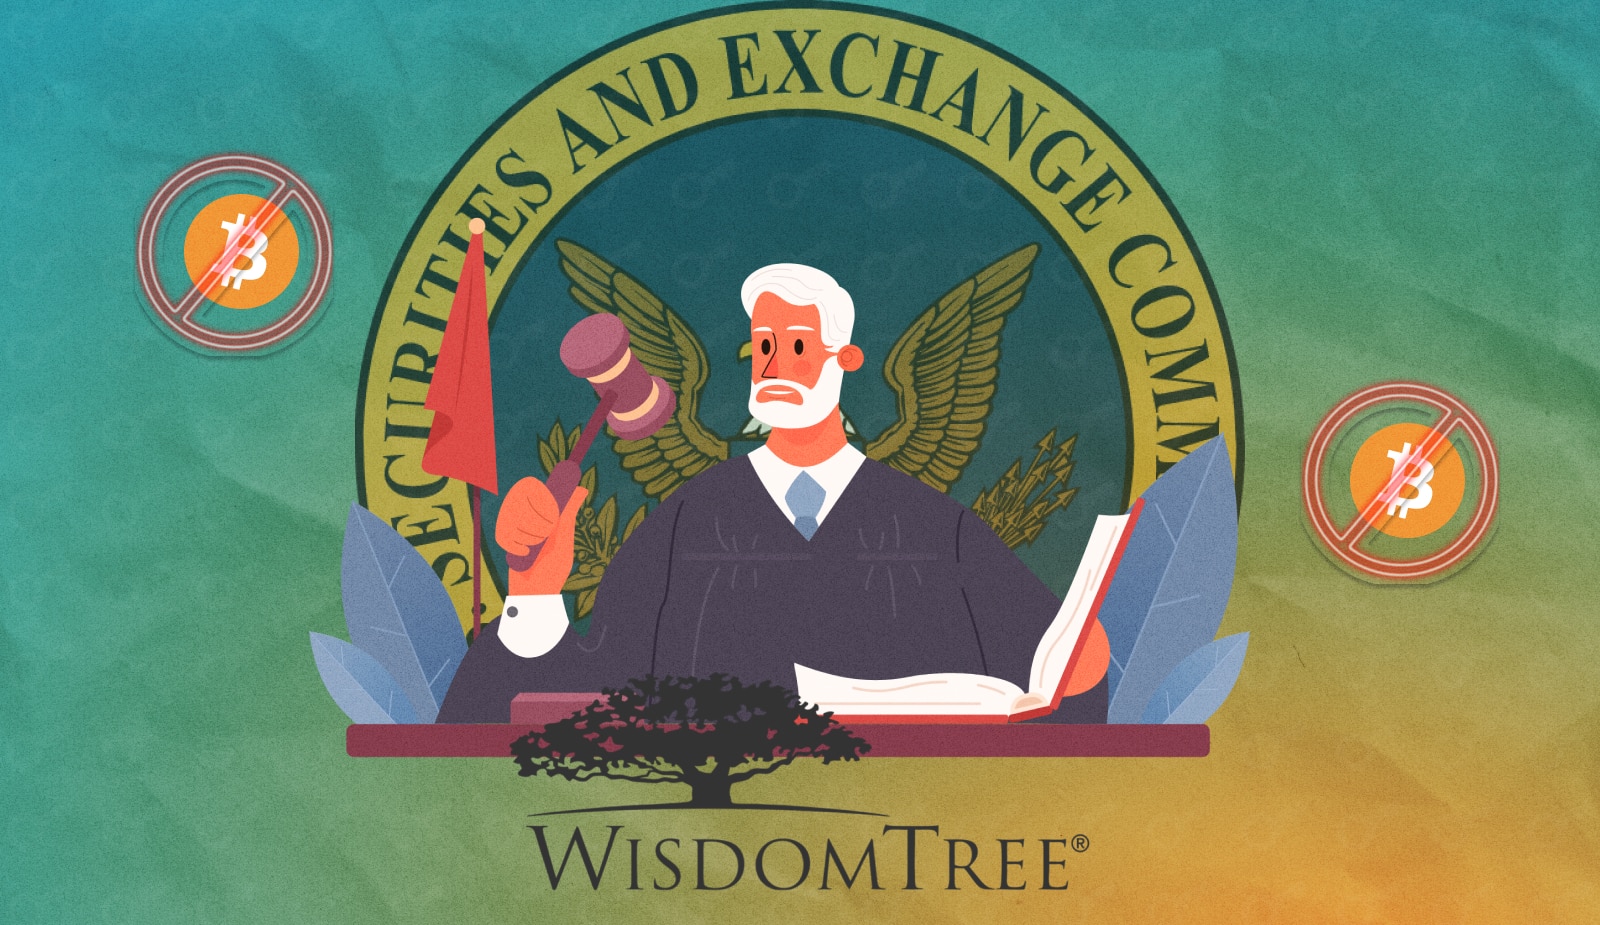 SEC відхилила заявку WisdomTree на випуск біткоїн-ETF. Знову. Головний колаж новини.